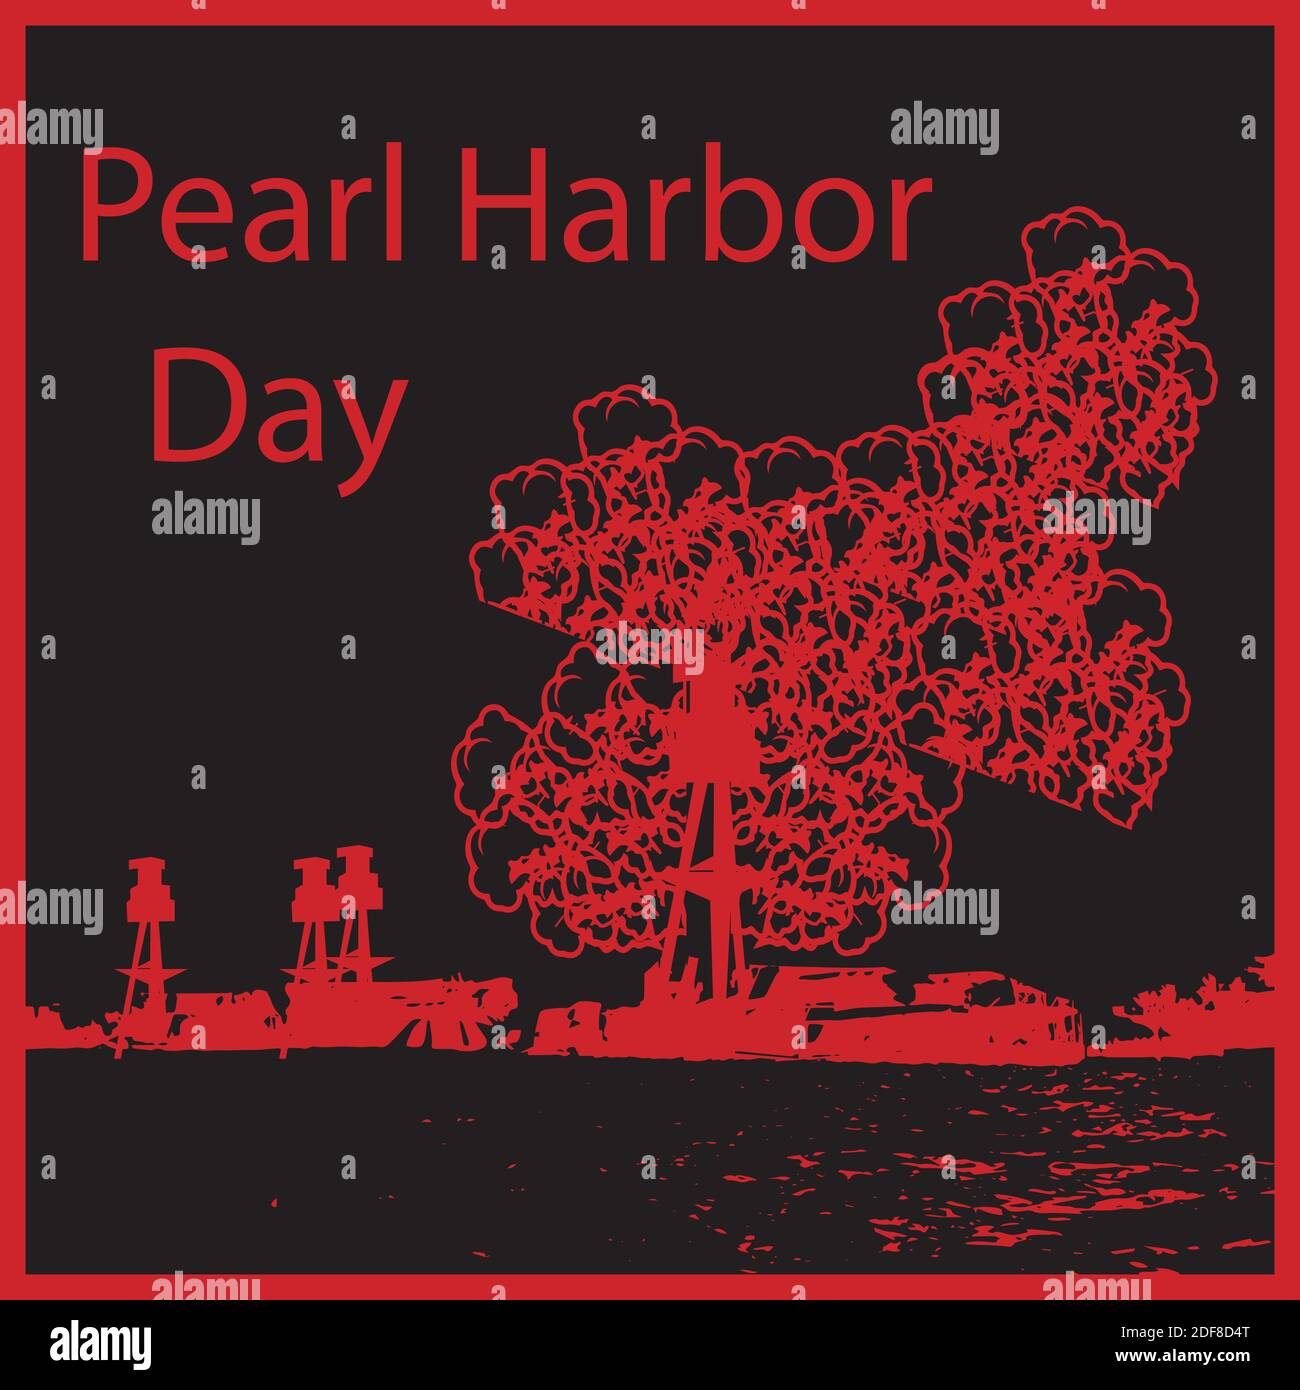 El día de Pearl Harbor se observa anualmente en los Estados Unidos el 7 de diciembre, para recordar y honrar a los 2,403 ciudadanos de los Estados Unidos que fueron asesinados en TH Ilustración del Vector